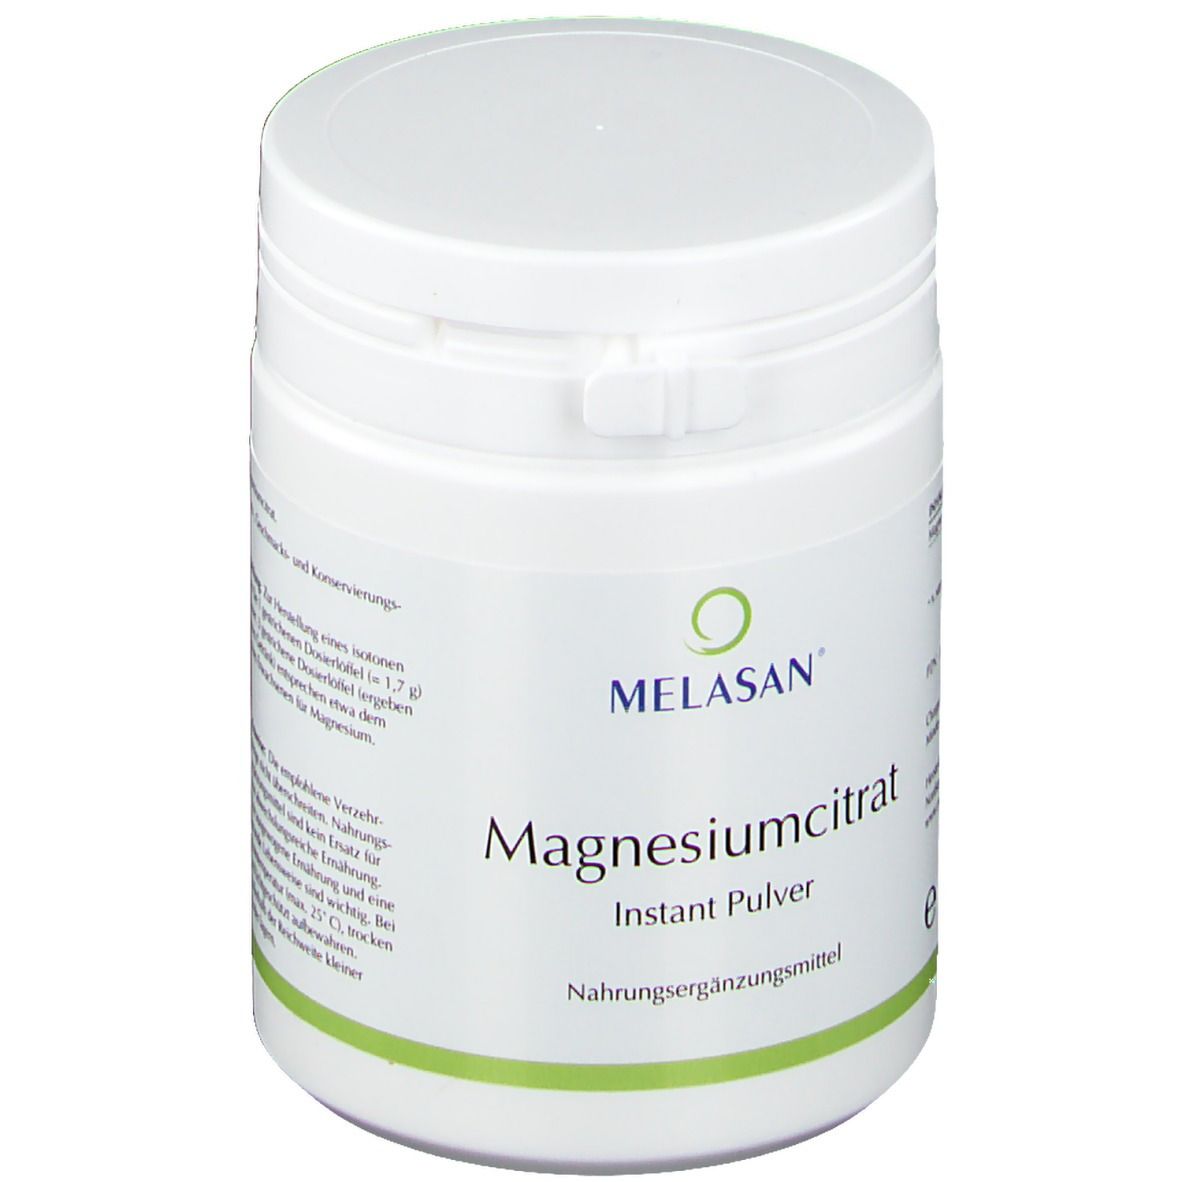 MELASAN® Magnesiumcitrat Instant